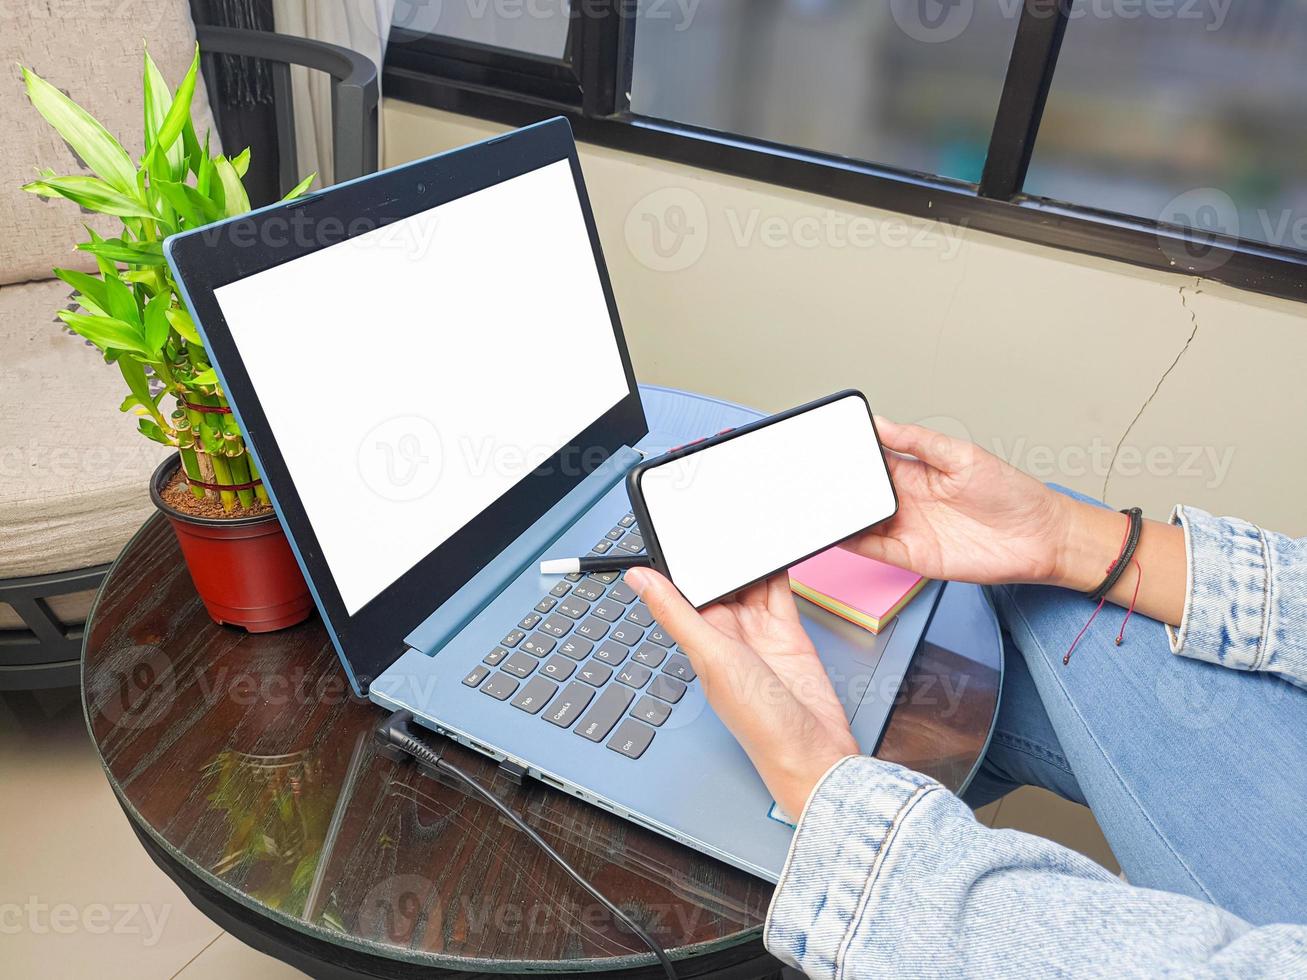 ordinateur, image de maquette de téléphone à écran vierge avec fond blanc pour la publicité, main de femme utilisant un ordinateur portable et un téléphone portable sur la table du café.maquette photo